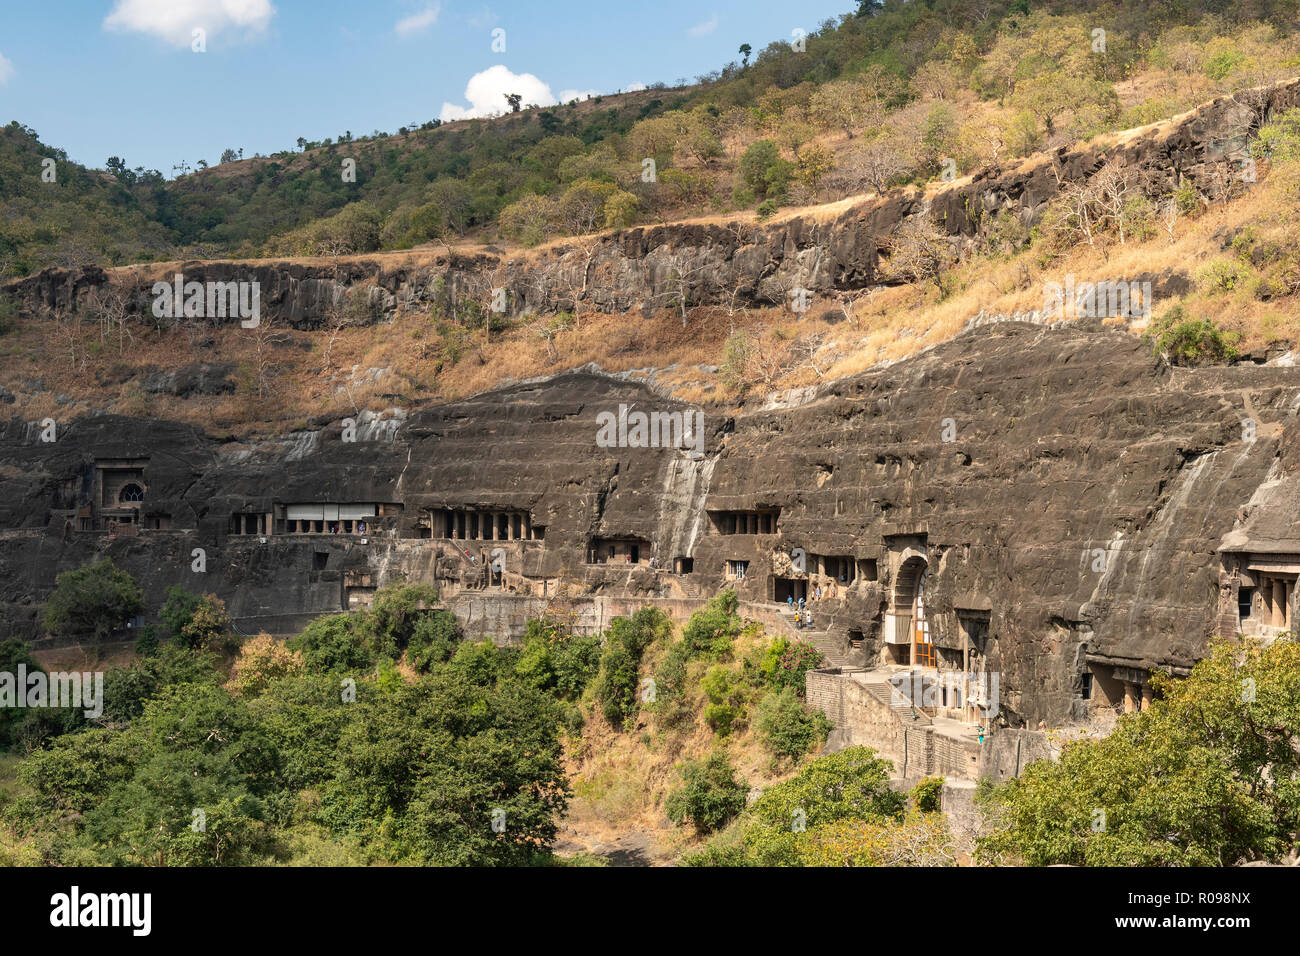 View of Ajanta Caves, near Aurangabad, Maharashtra, India Stock Photo